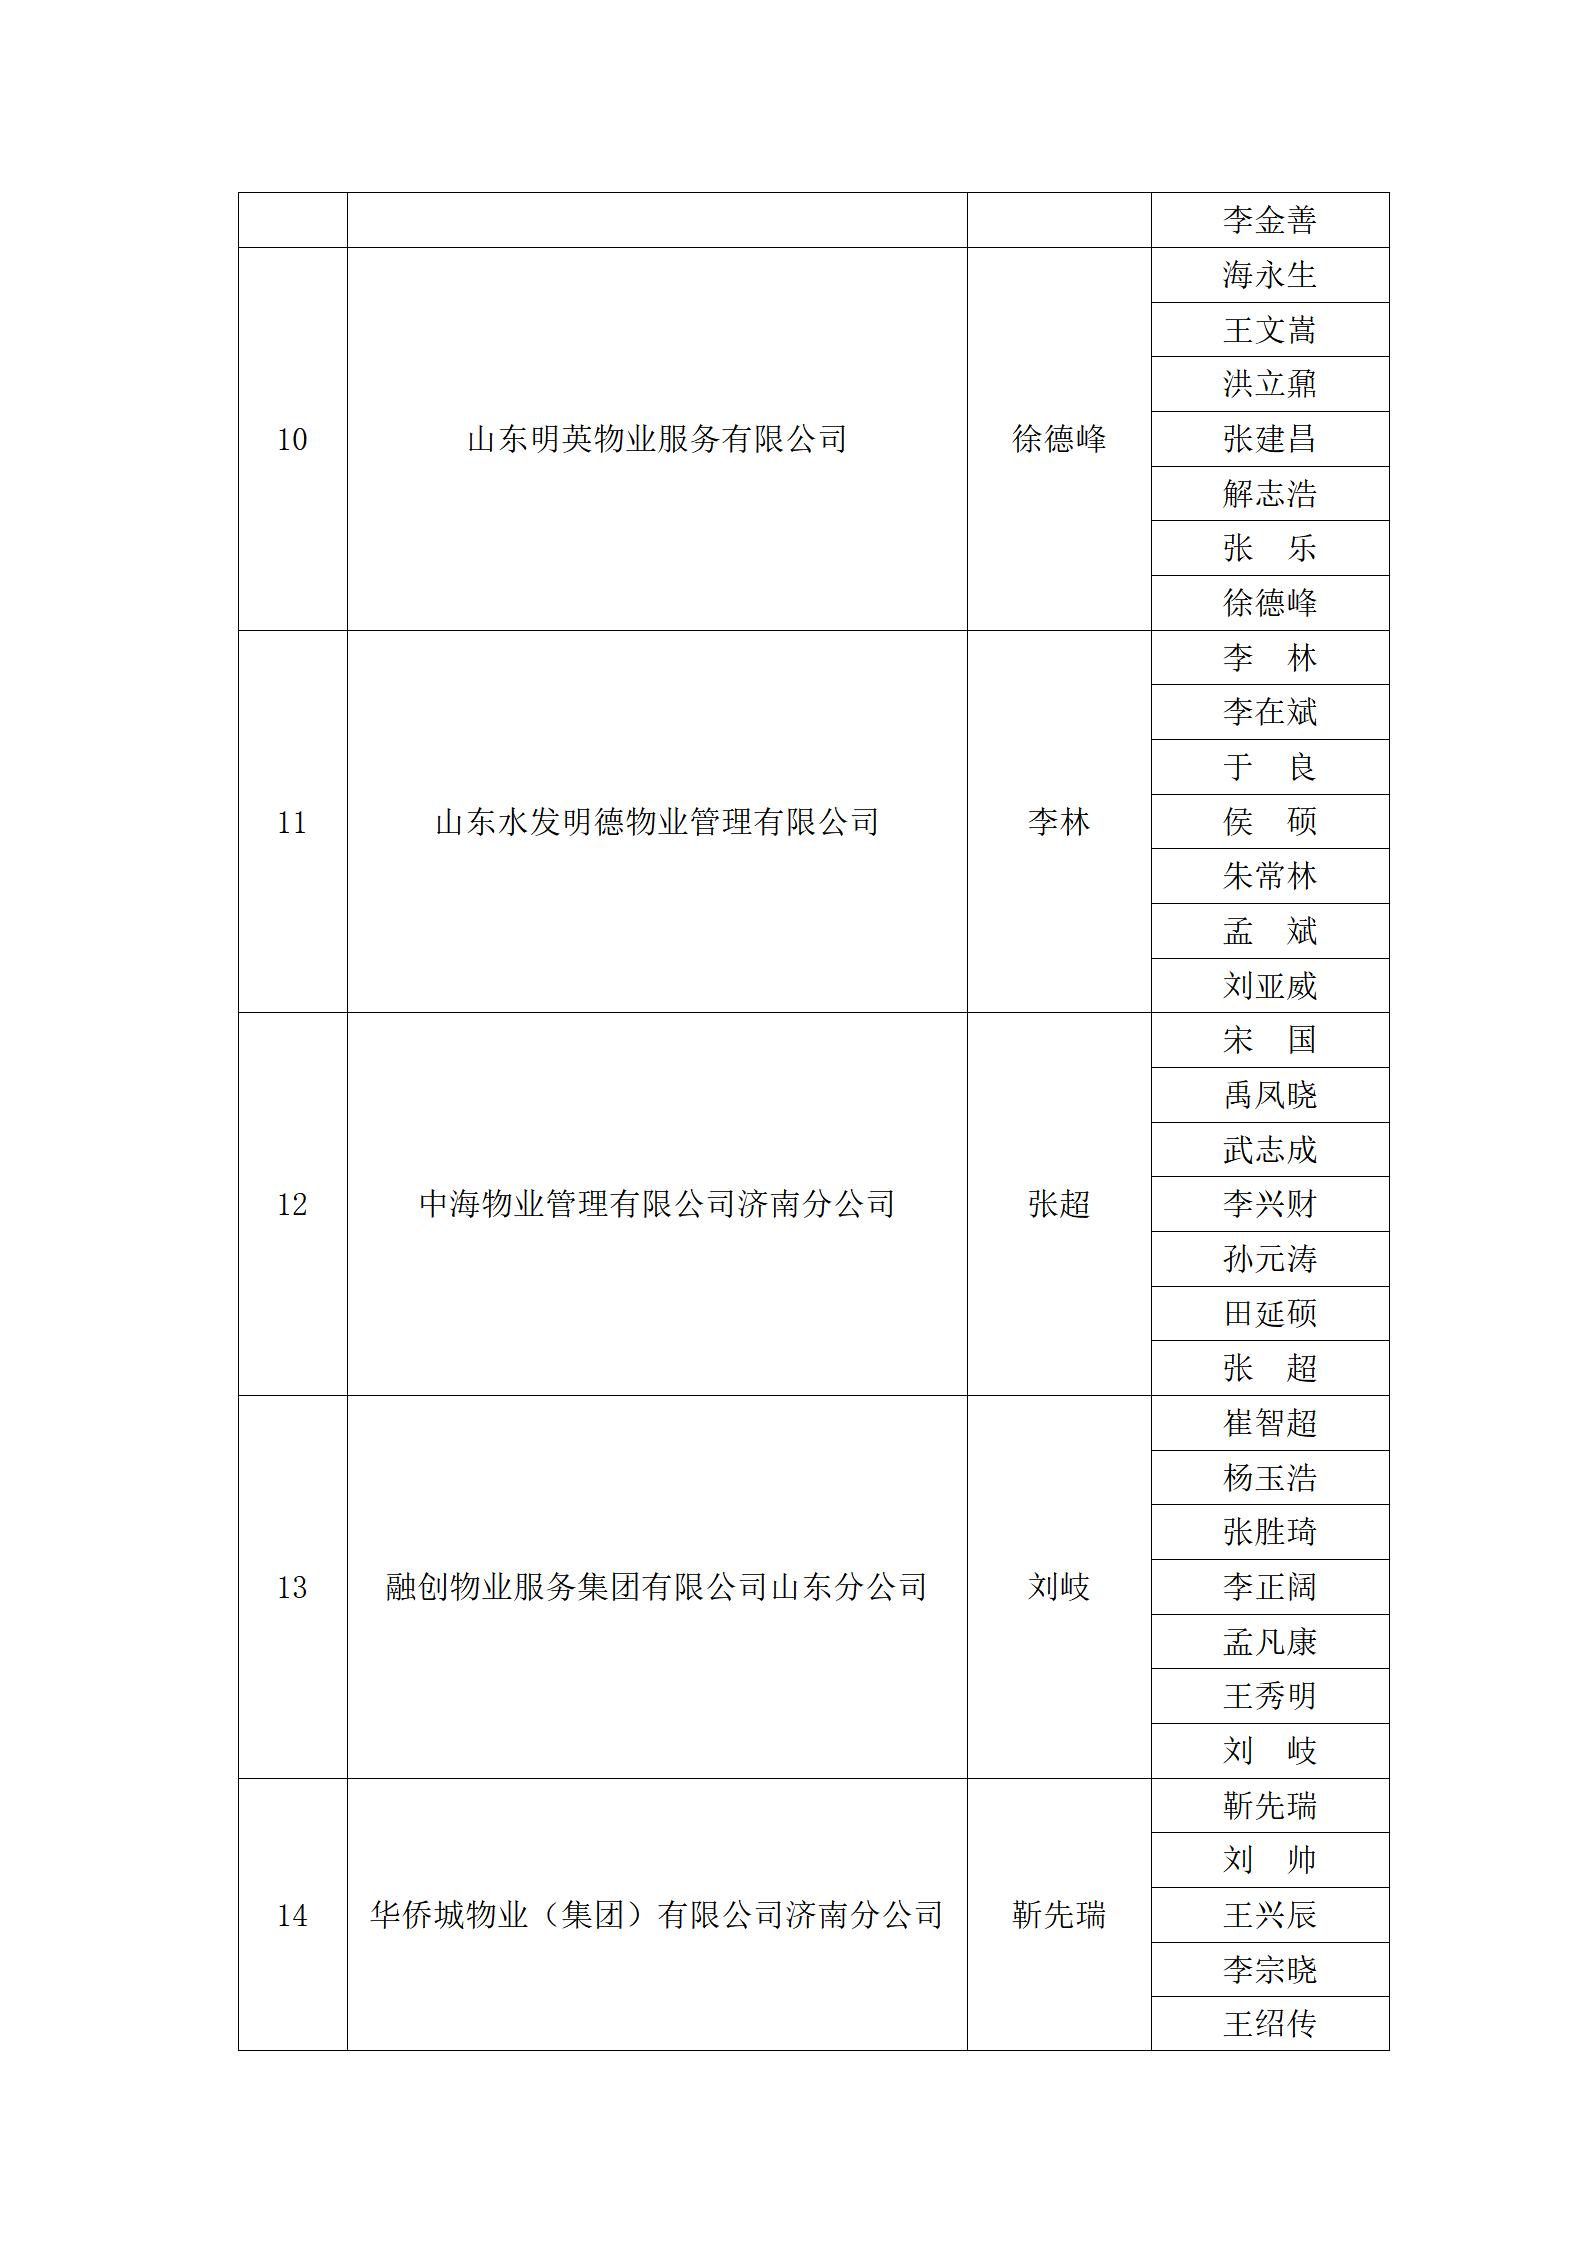 关于“明德杯”第六届济南市物业服务行业职业技能竞赛选手名单的公示_19